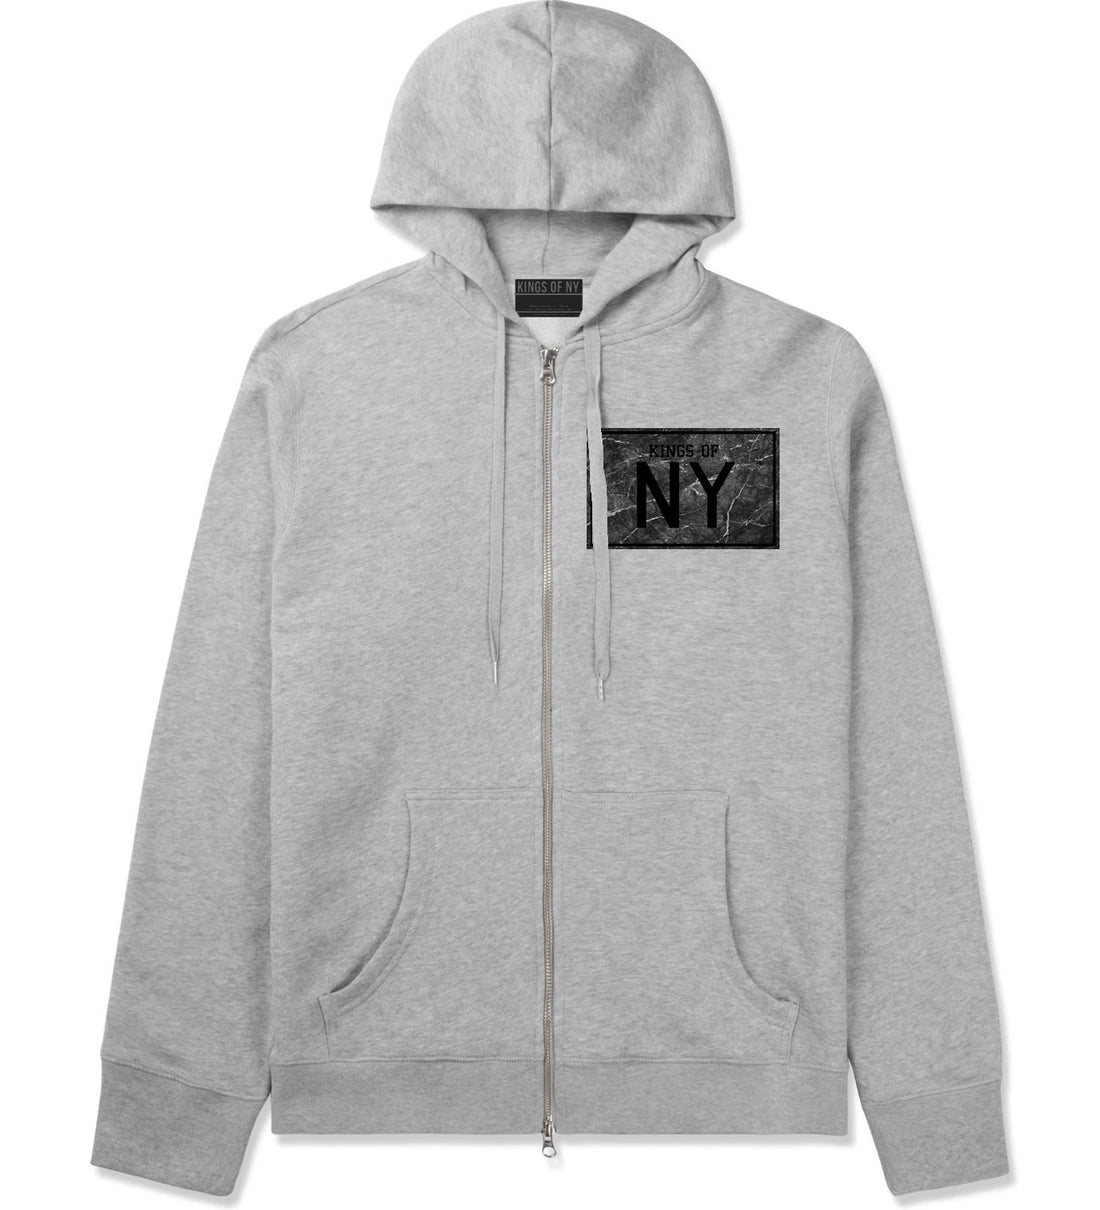 Granite NY Logo Print Zip Up Hoodie Hoody in Grey by Kings Of NY